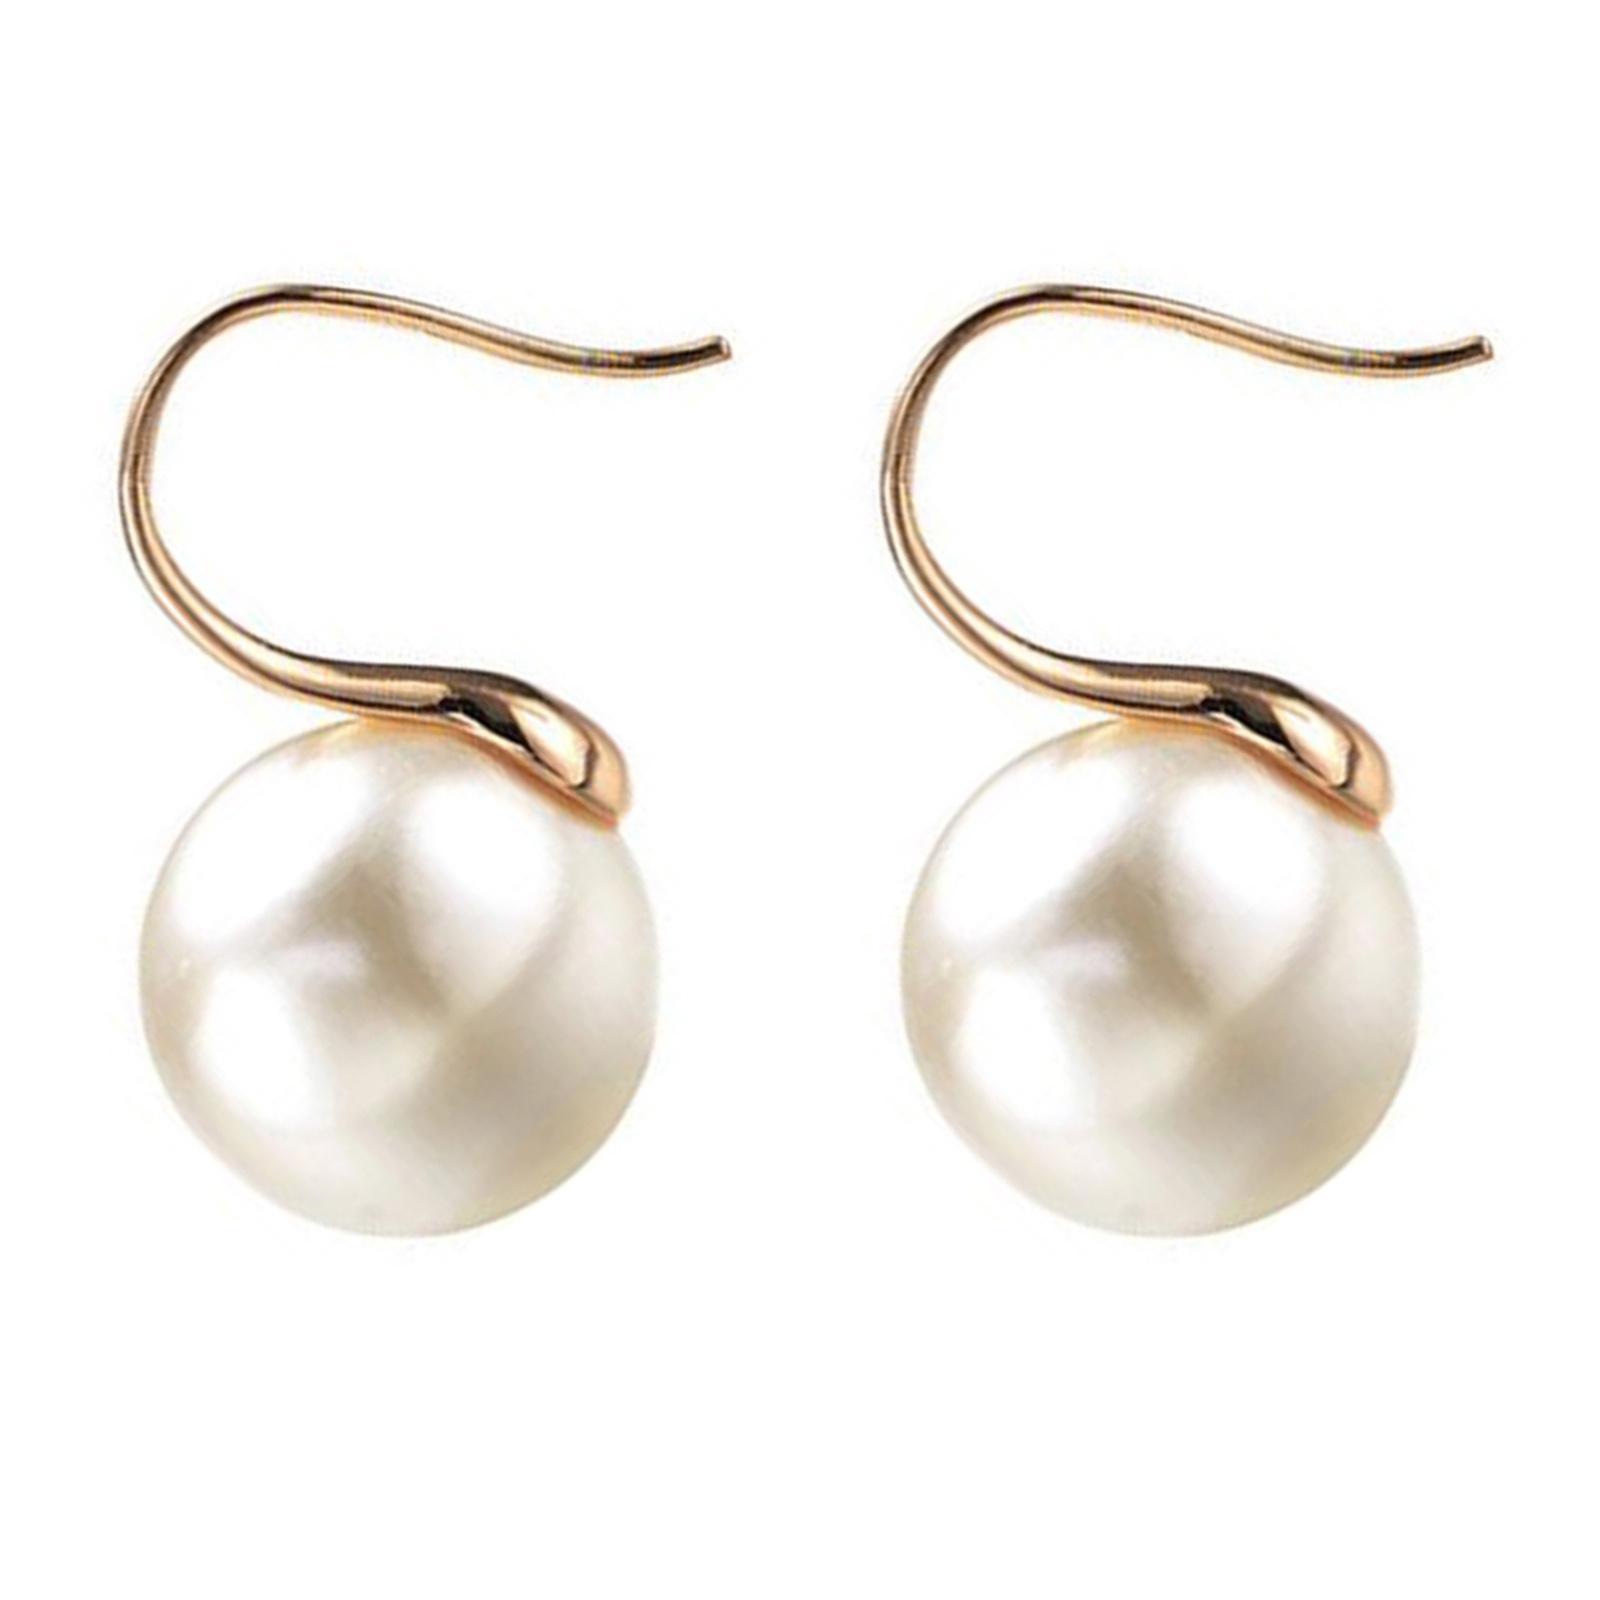 Pearl Earrings Faux Handpicked Drop Earrings Classic Ear Stud Girls